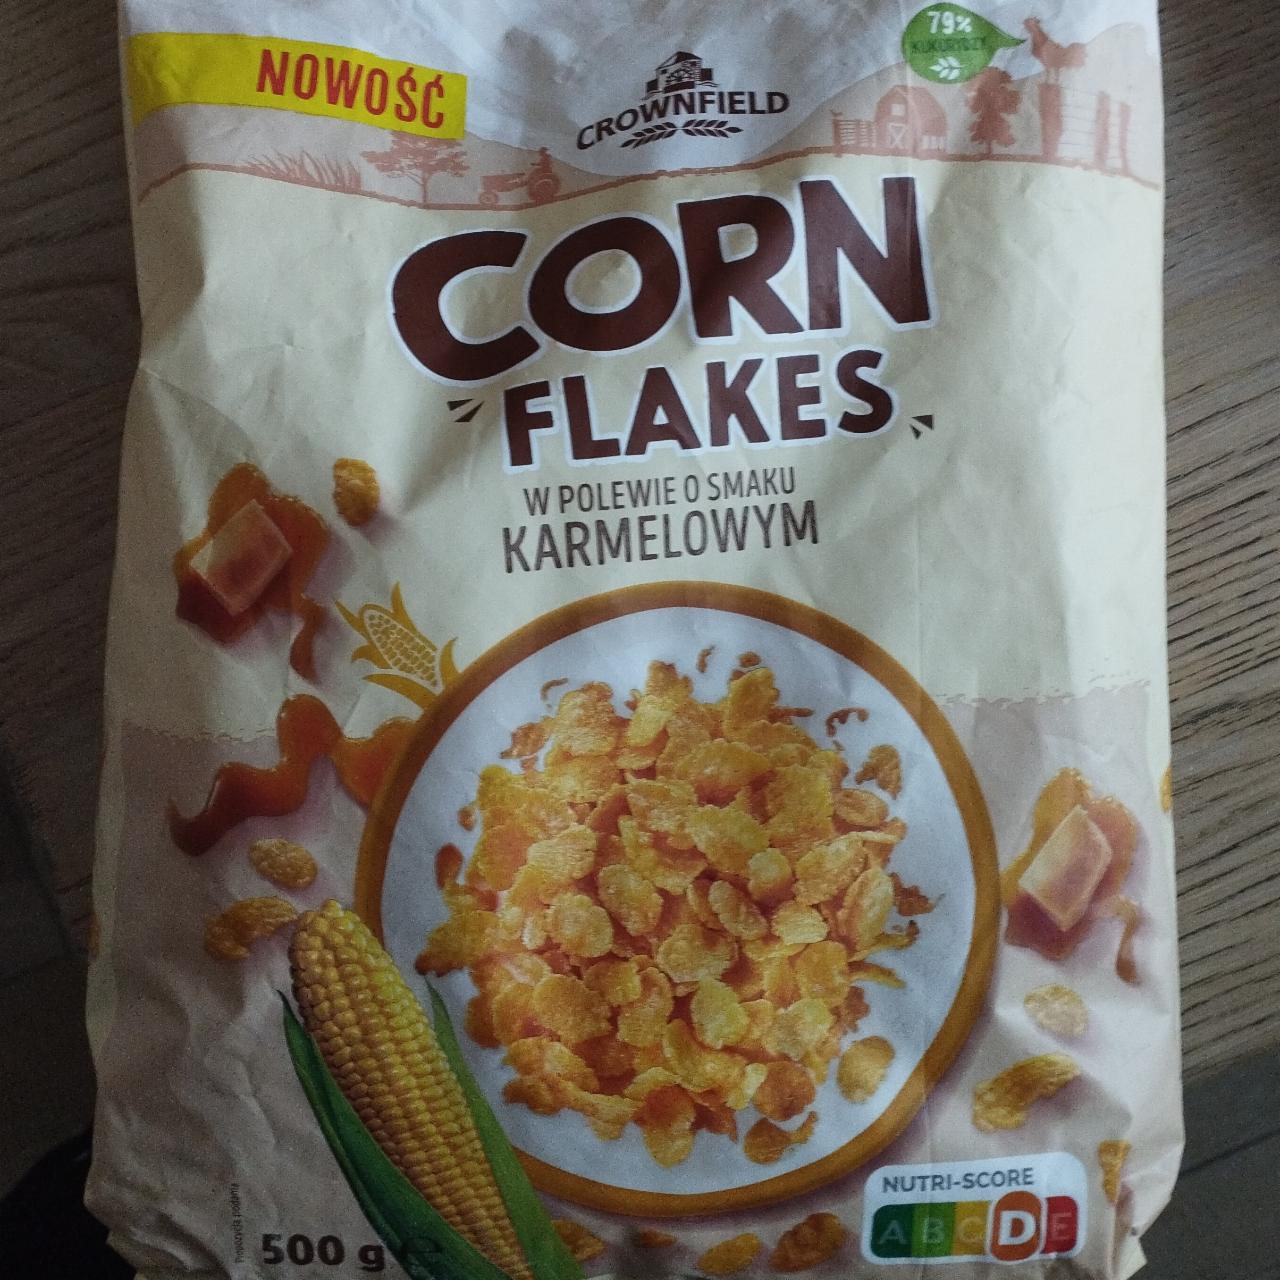 Fotografie - Corn flakes w polewie o smaku karmelowym Crownfield